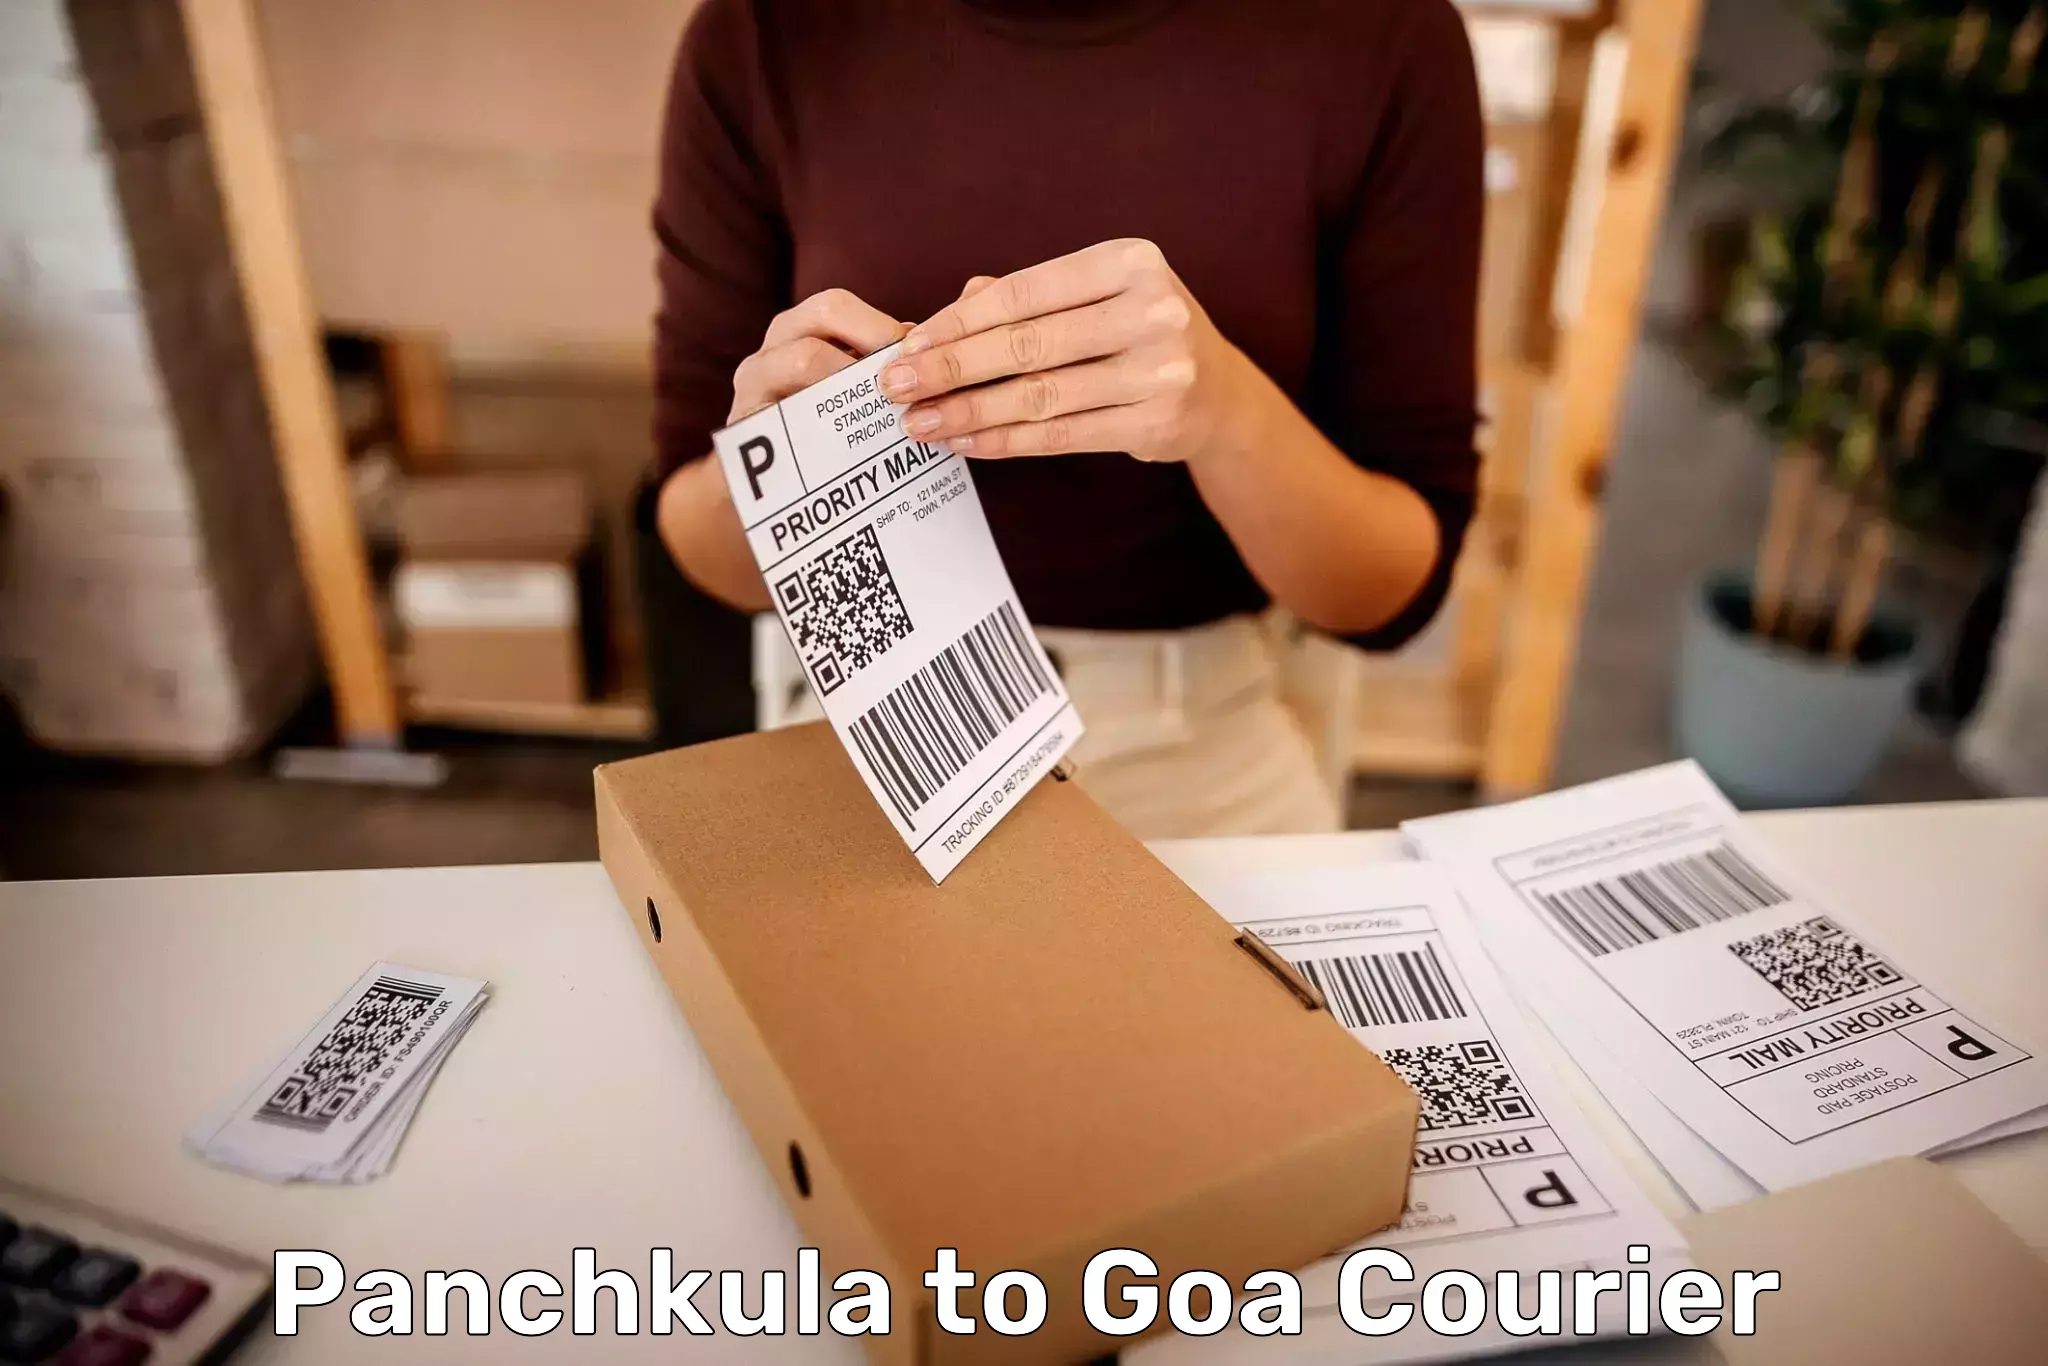 Personal effects shipping in Panchkula to IIT Goa